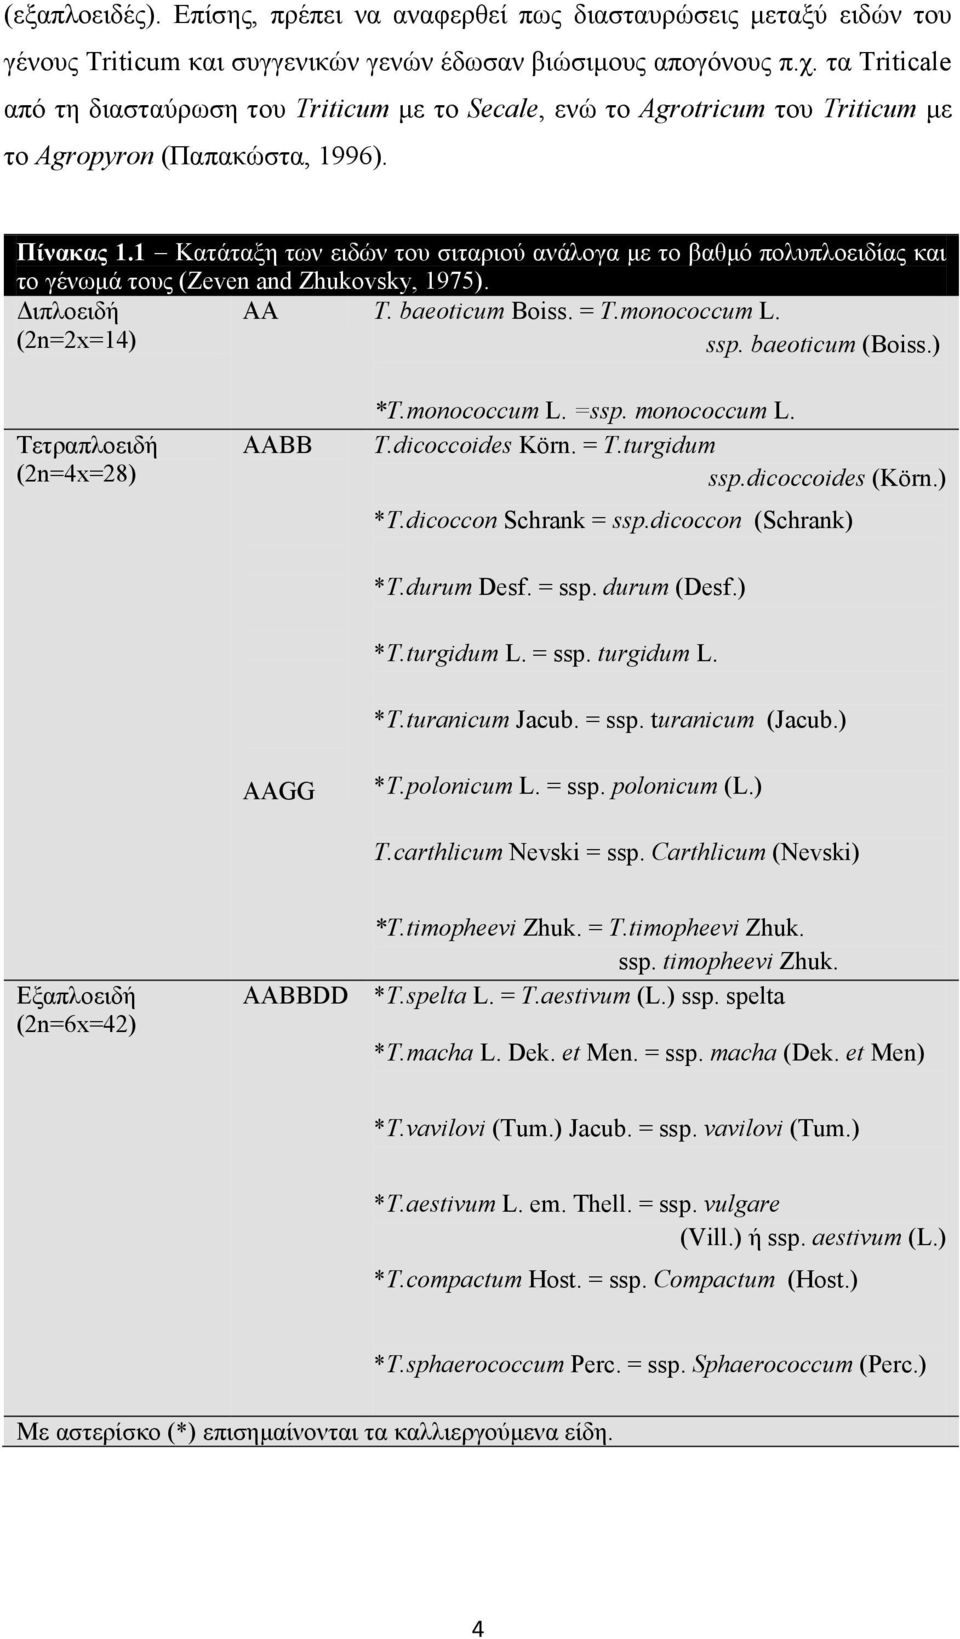 1 Κατάταξη των ειδών του σιταριού ανάλογα με το βαθμό πολυπλοειδίας και το γένωμά τους (Zeven and Zhukovsky, 1975). Διπλοειδή (2n=2x=14) ΑΑ T. baeoticum Boiss. = T.monococcum L. ssp. baeoticum (Boiss.